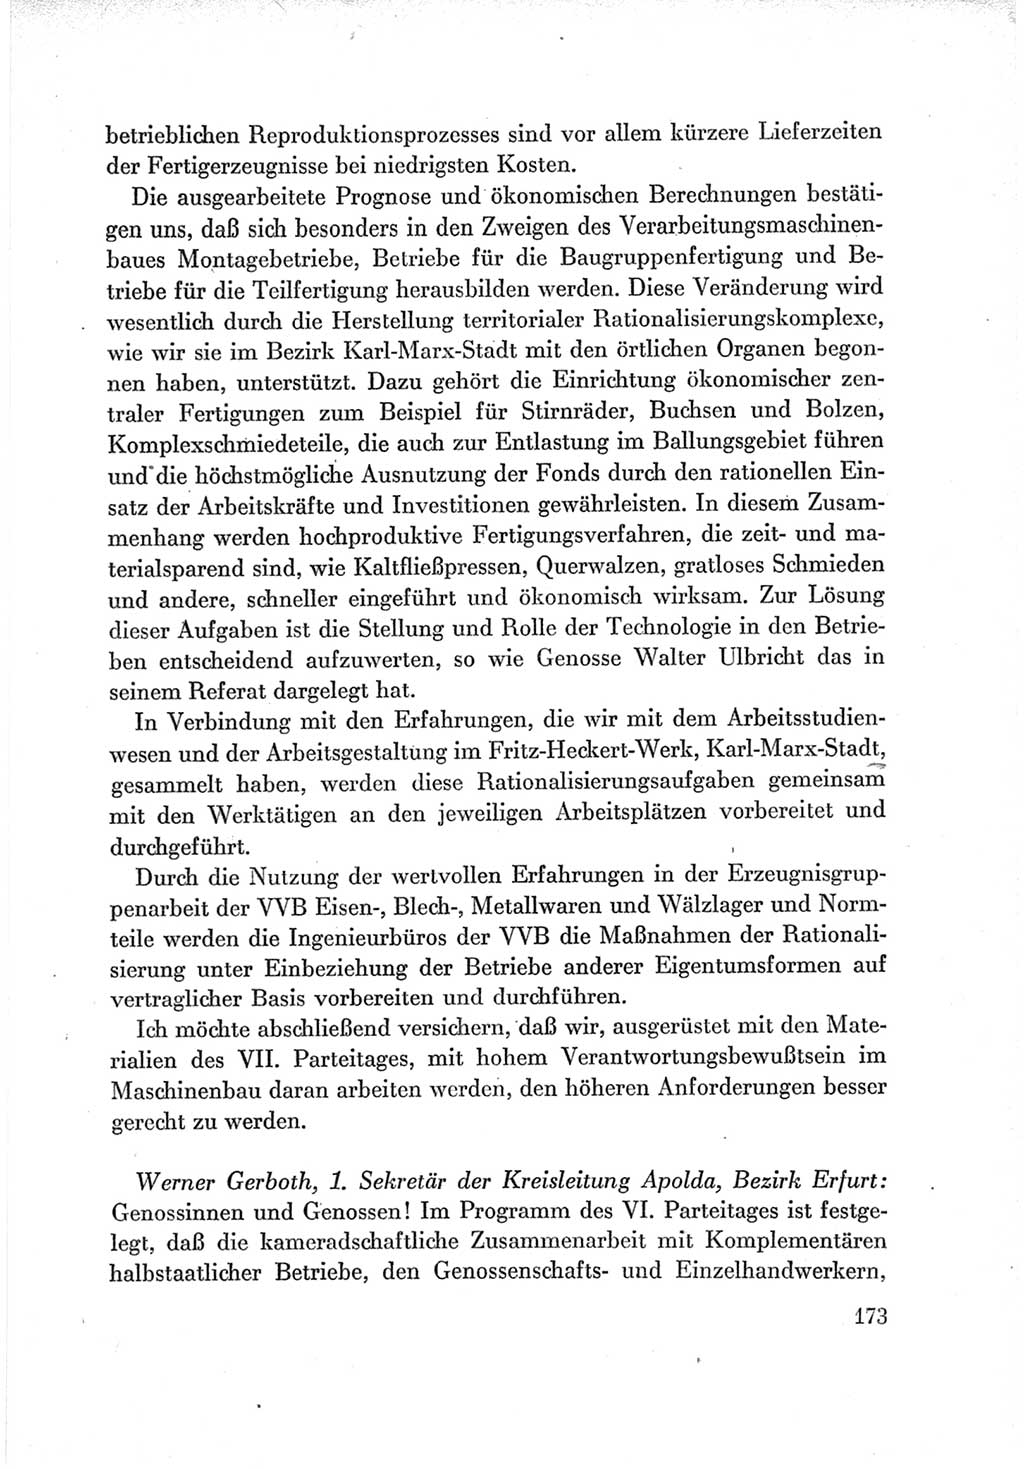 Protokoll der Verhandlungen des Ⅶ. Parteitages der Sozialistischen Einheitspartei Deutschlands (SED) [Deutsche Demokratische Republik (DDR)] 1967, Band Ⅲ, Seite 173 (Prot. Verh. Ⅶ. PT SED DDR 1967, Bd. Ⅲ, S. 173)